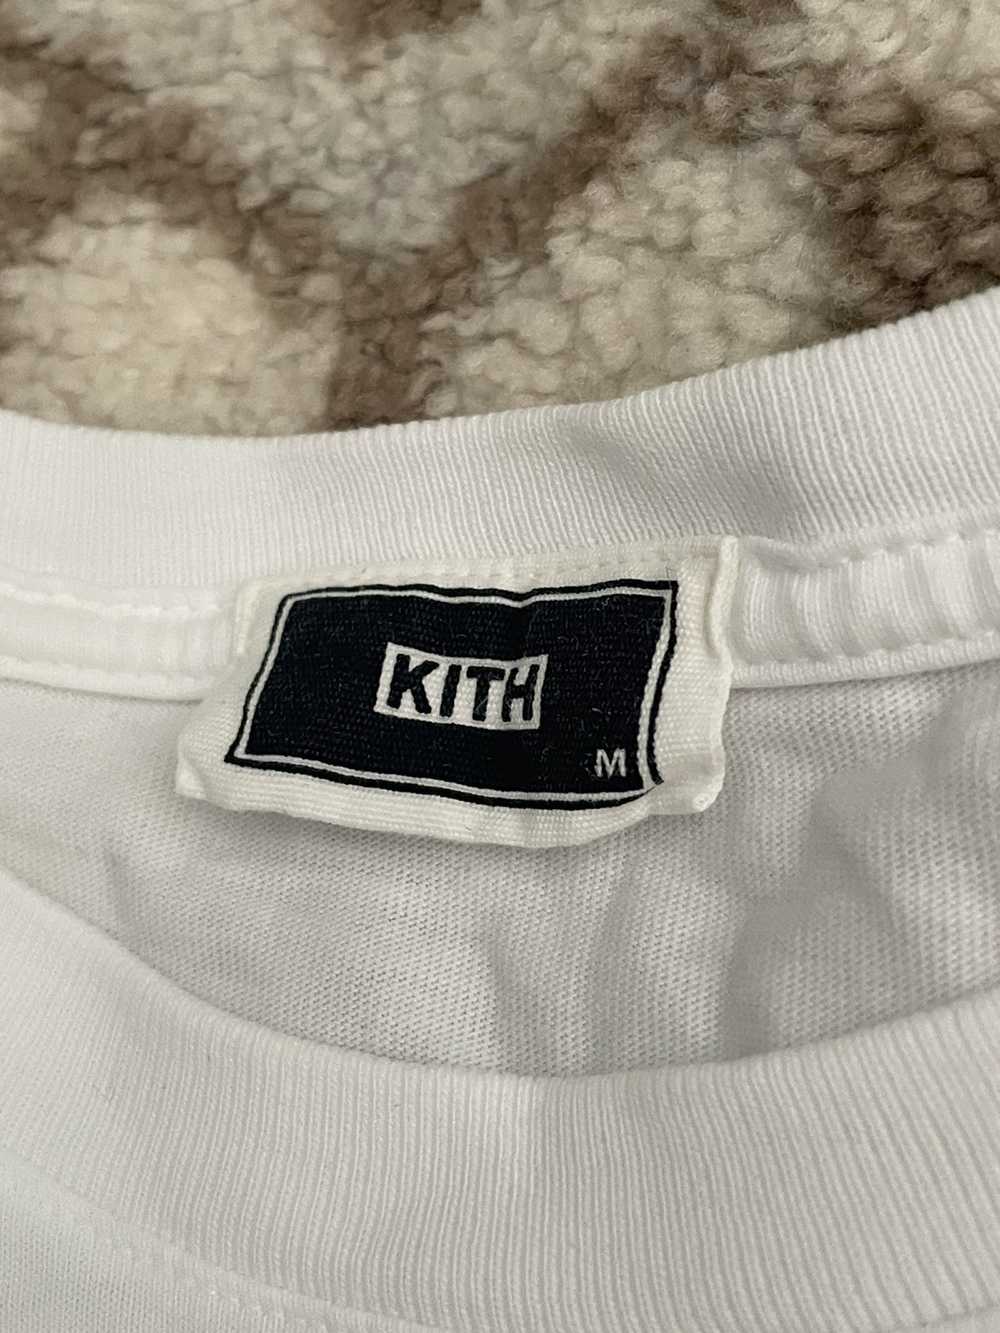 Kith Kith Design Studios Tee - image 3